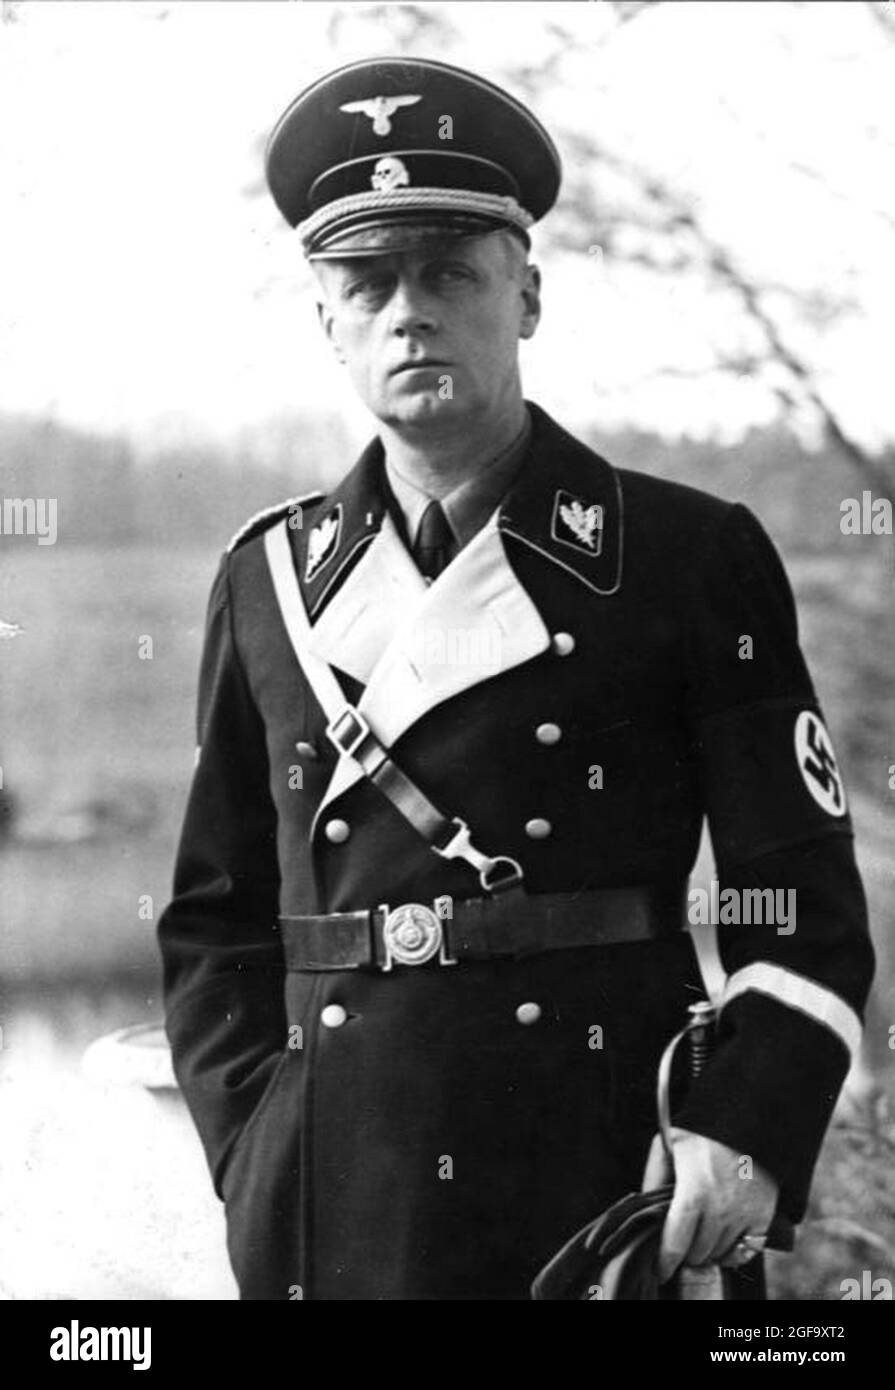 Il leader nazista e politico Joachim von Ribbentrop. È stato Ministro degli Affari Esteri nazista (Ministro degli Esteri). Fu catturato nel 1945, processato e impiccato a Norimberga nel 1946. Credit: Bundesarchiv tedesco Foto Stock